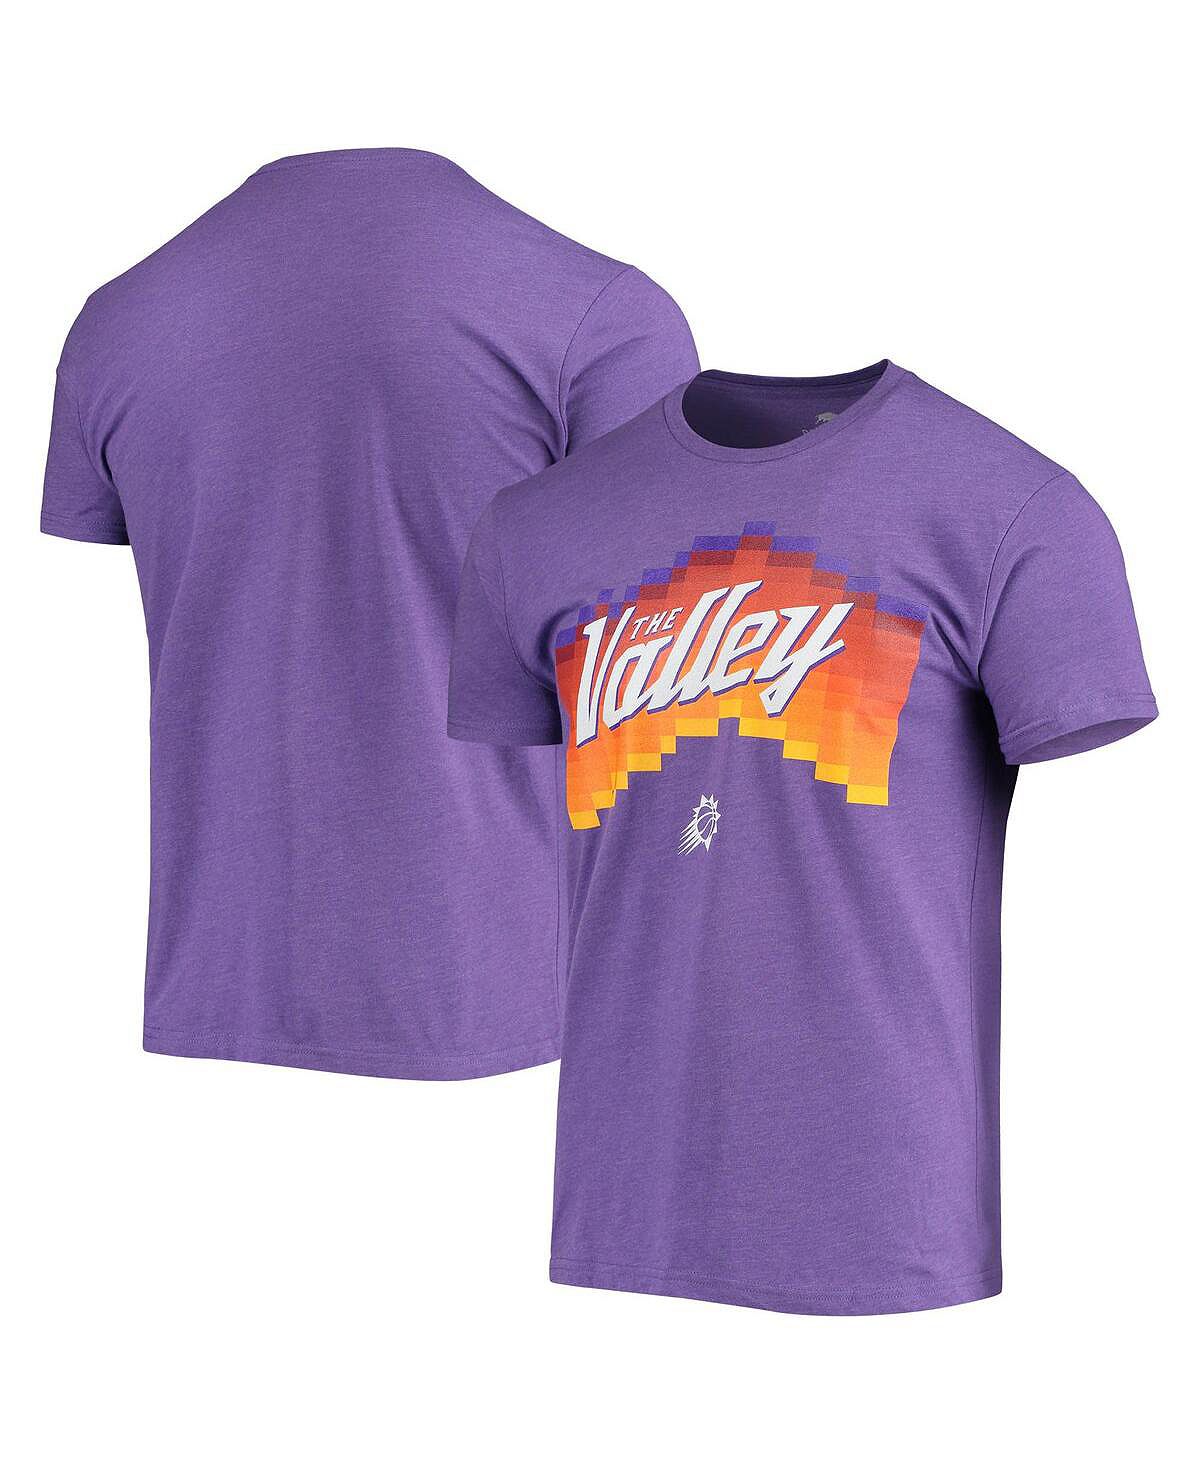 Мужская фиолетовая футболка phoenix suns the valley pixel city edition davis Sportiqe, фиолетовый